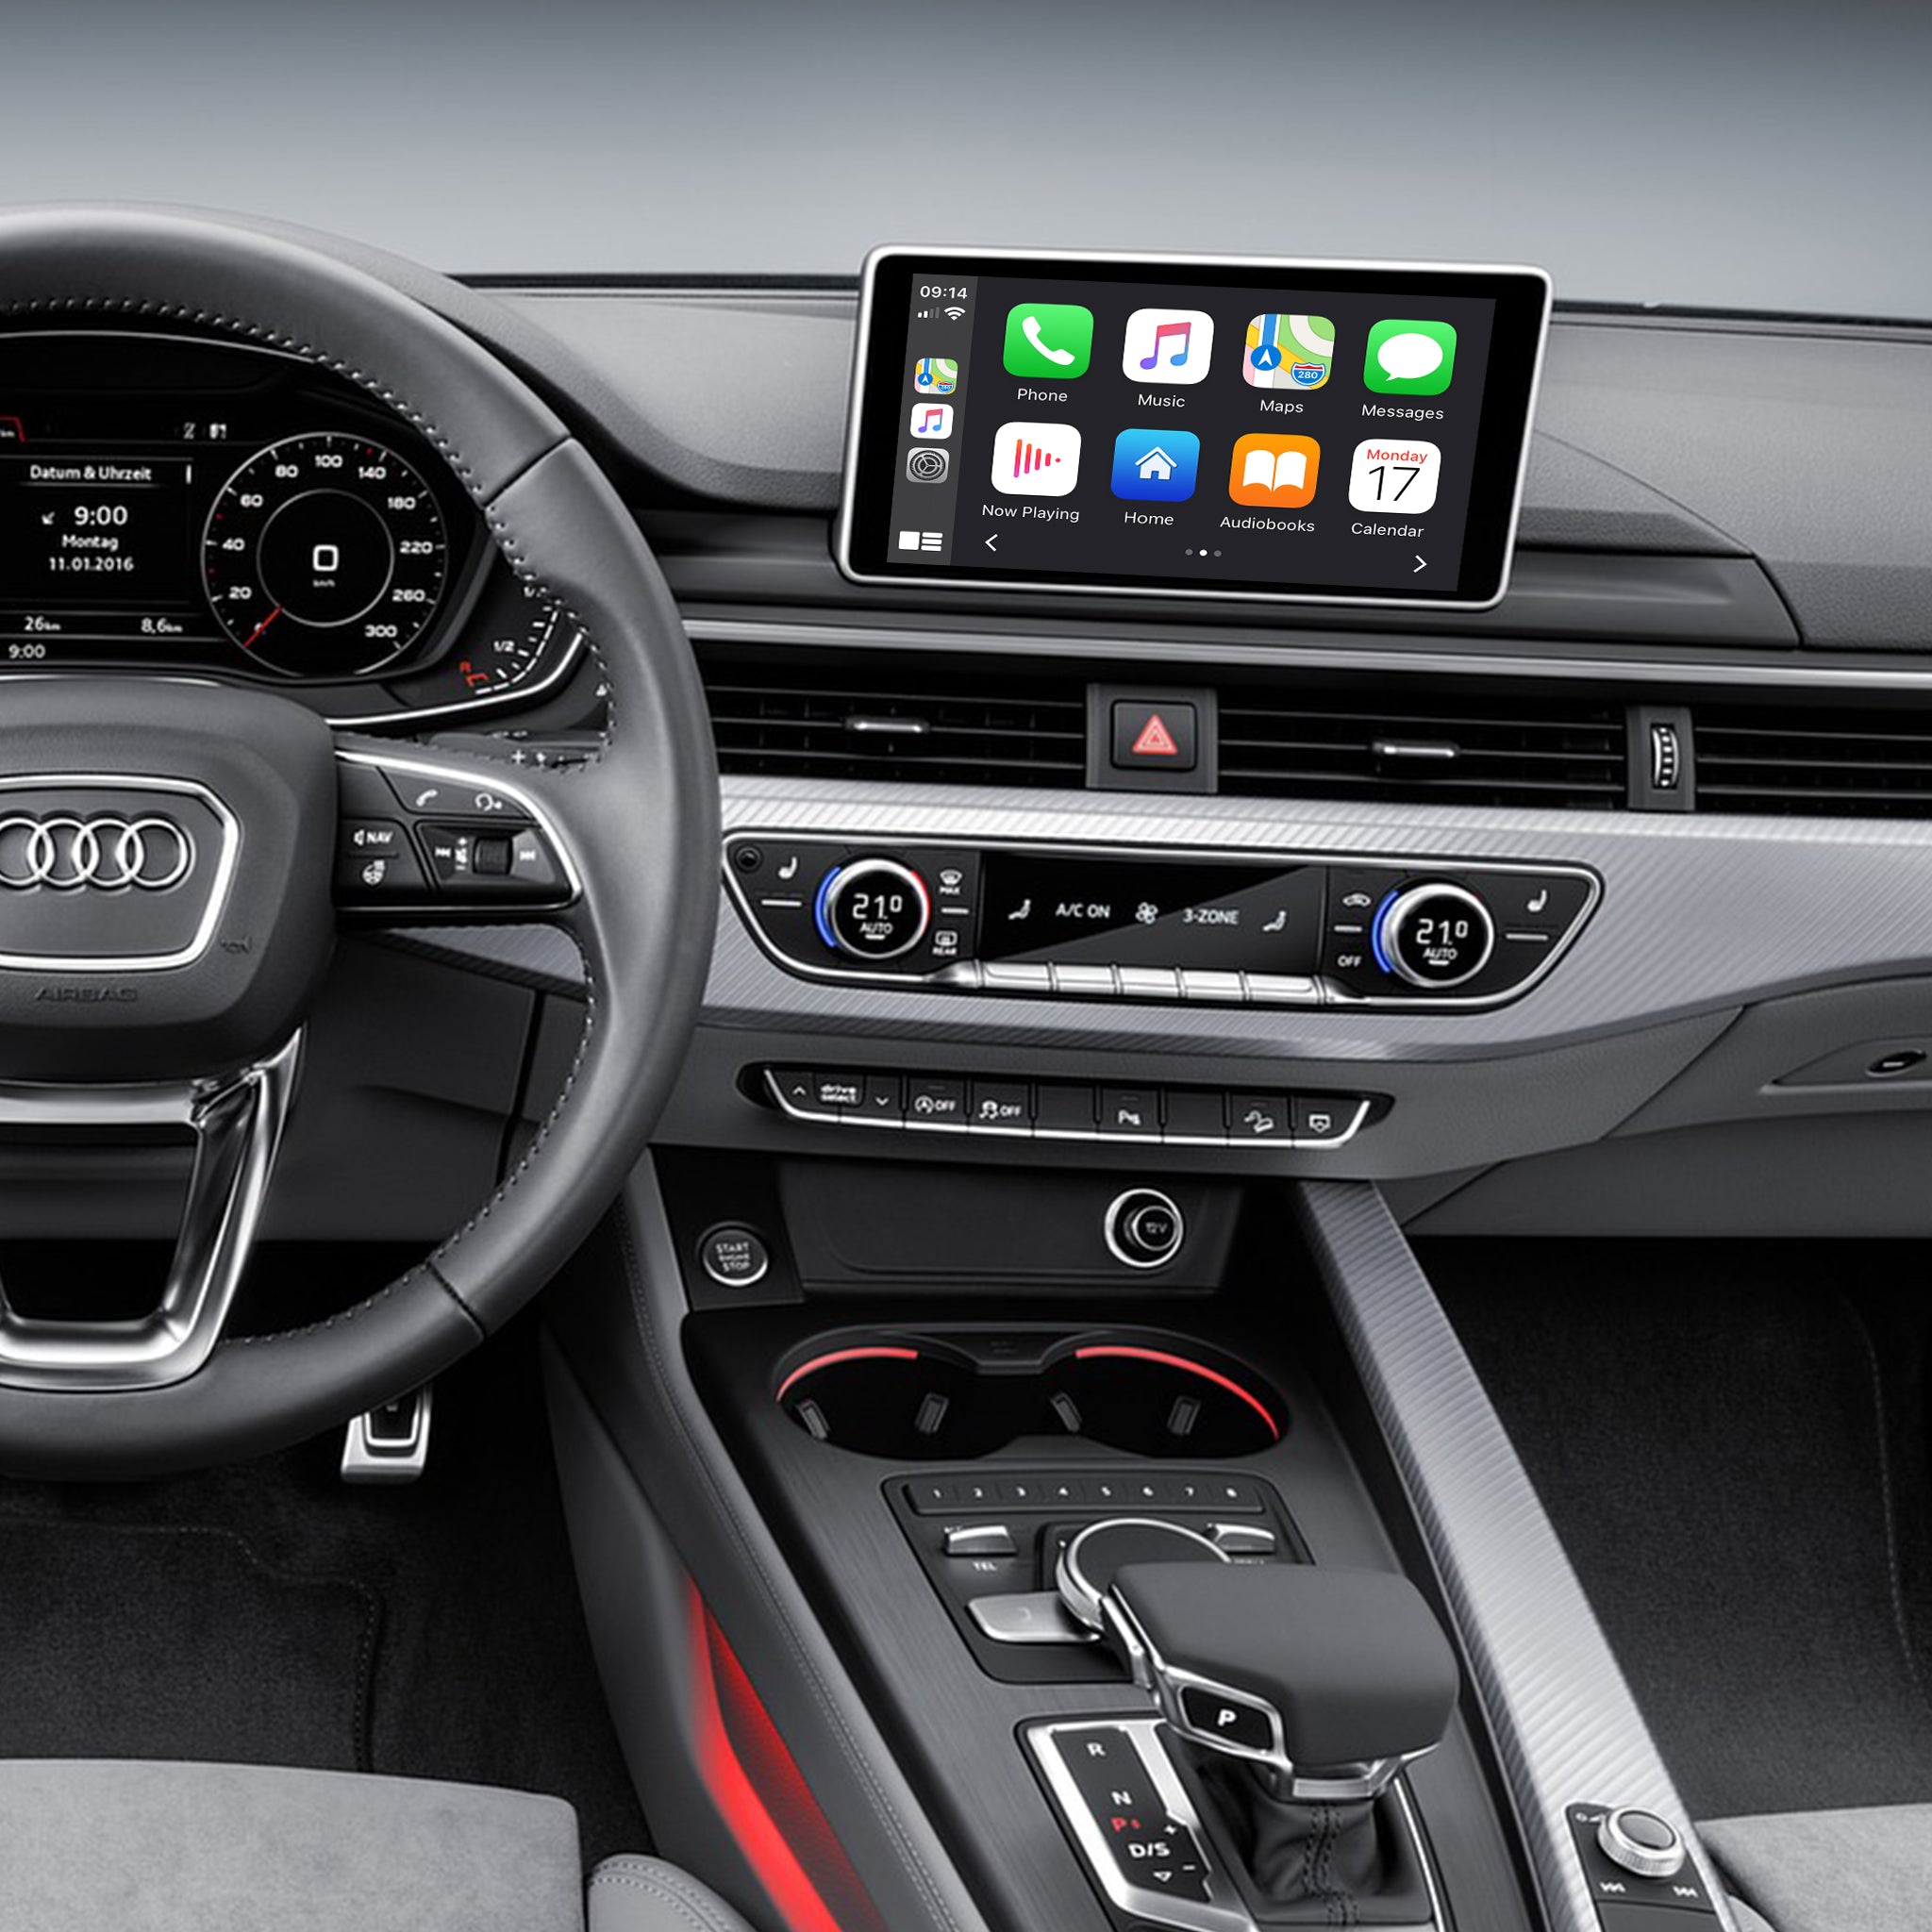 MIB/MIB 2 Navigation System Wireless CarPlay/ Android Auto Retrofit for Audi A3/S3/Q2/A4/A5/S5/Q7/Q5